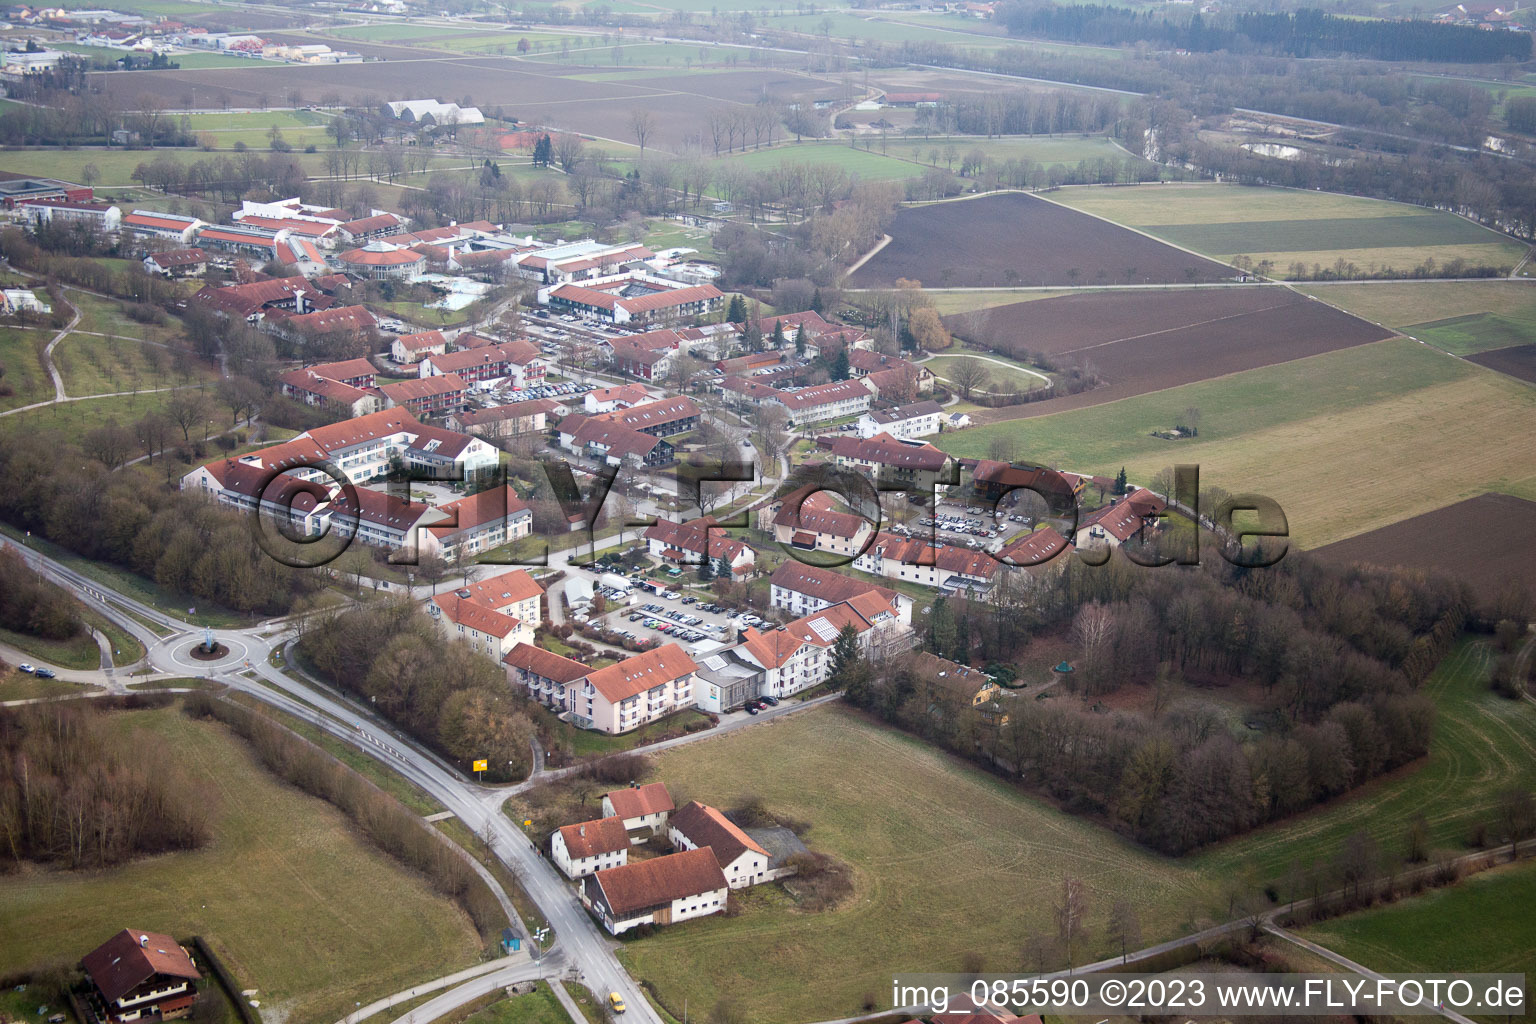 Bad Birnbach im Bundesland Bayern, Deutschland aus der Luft betrachtet